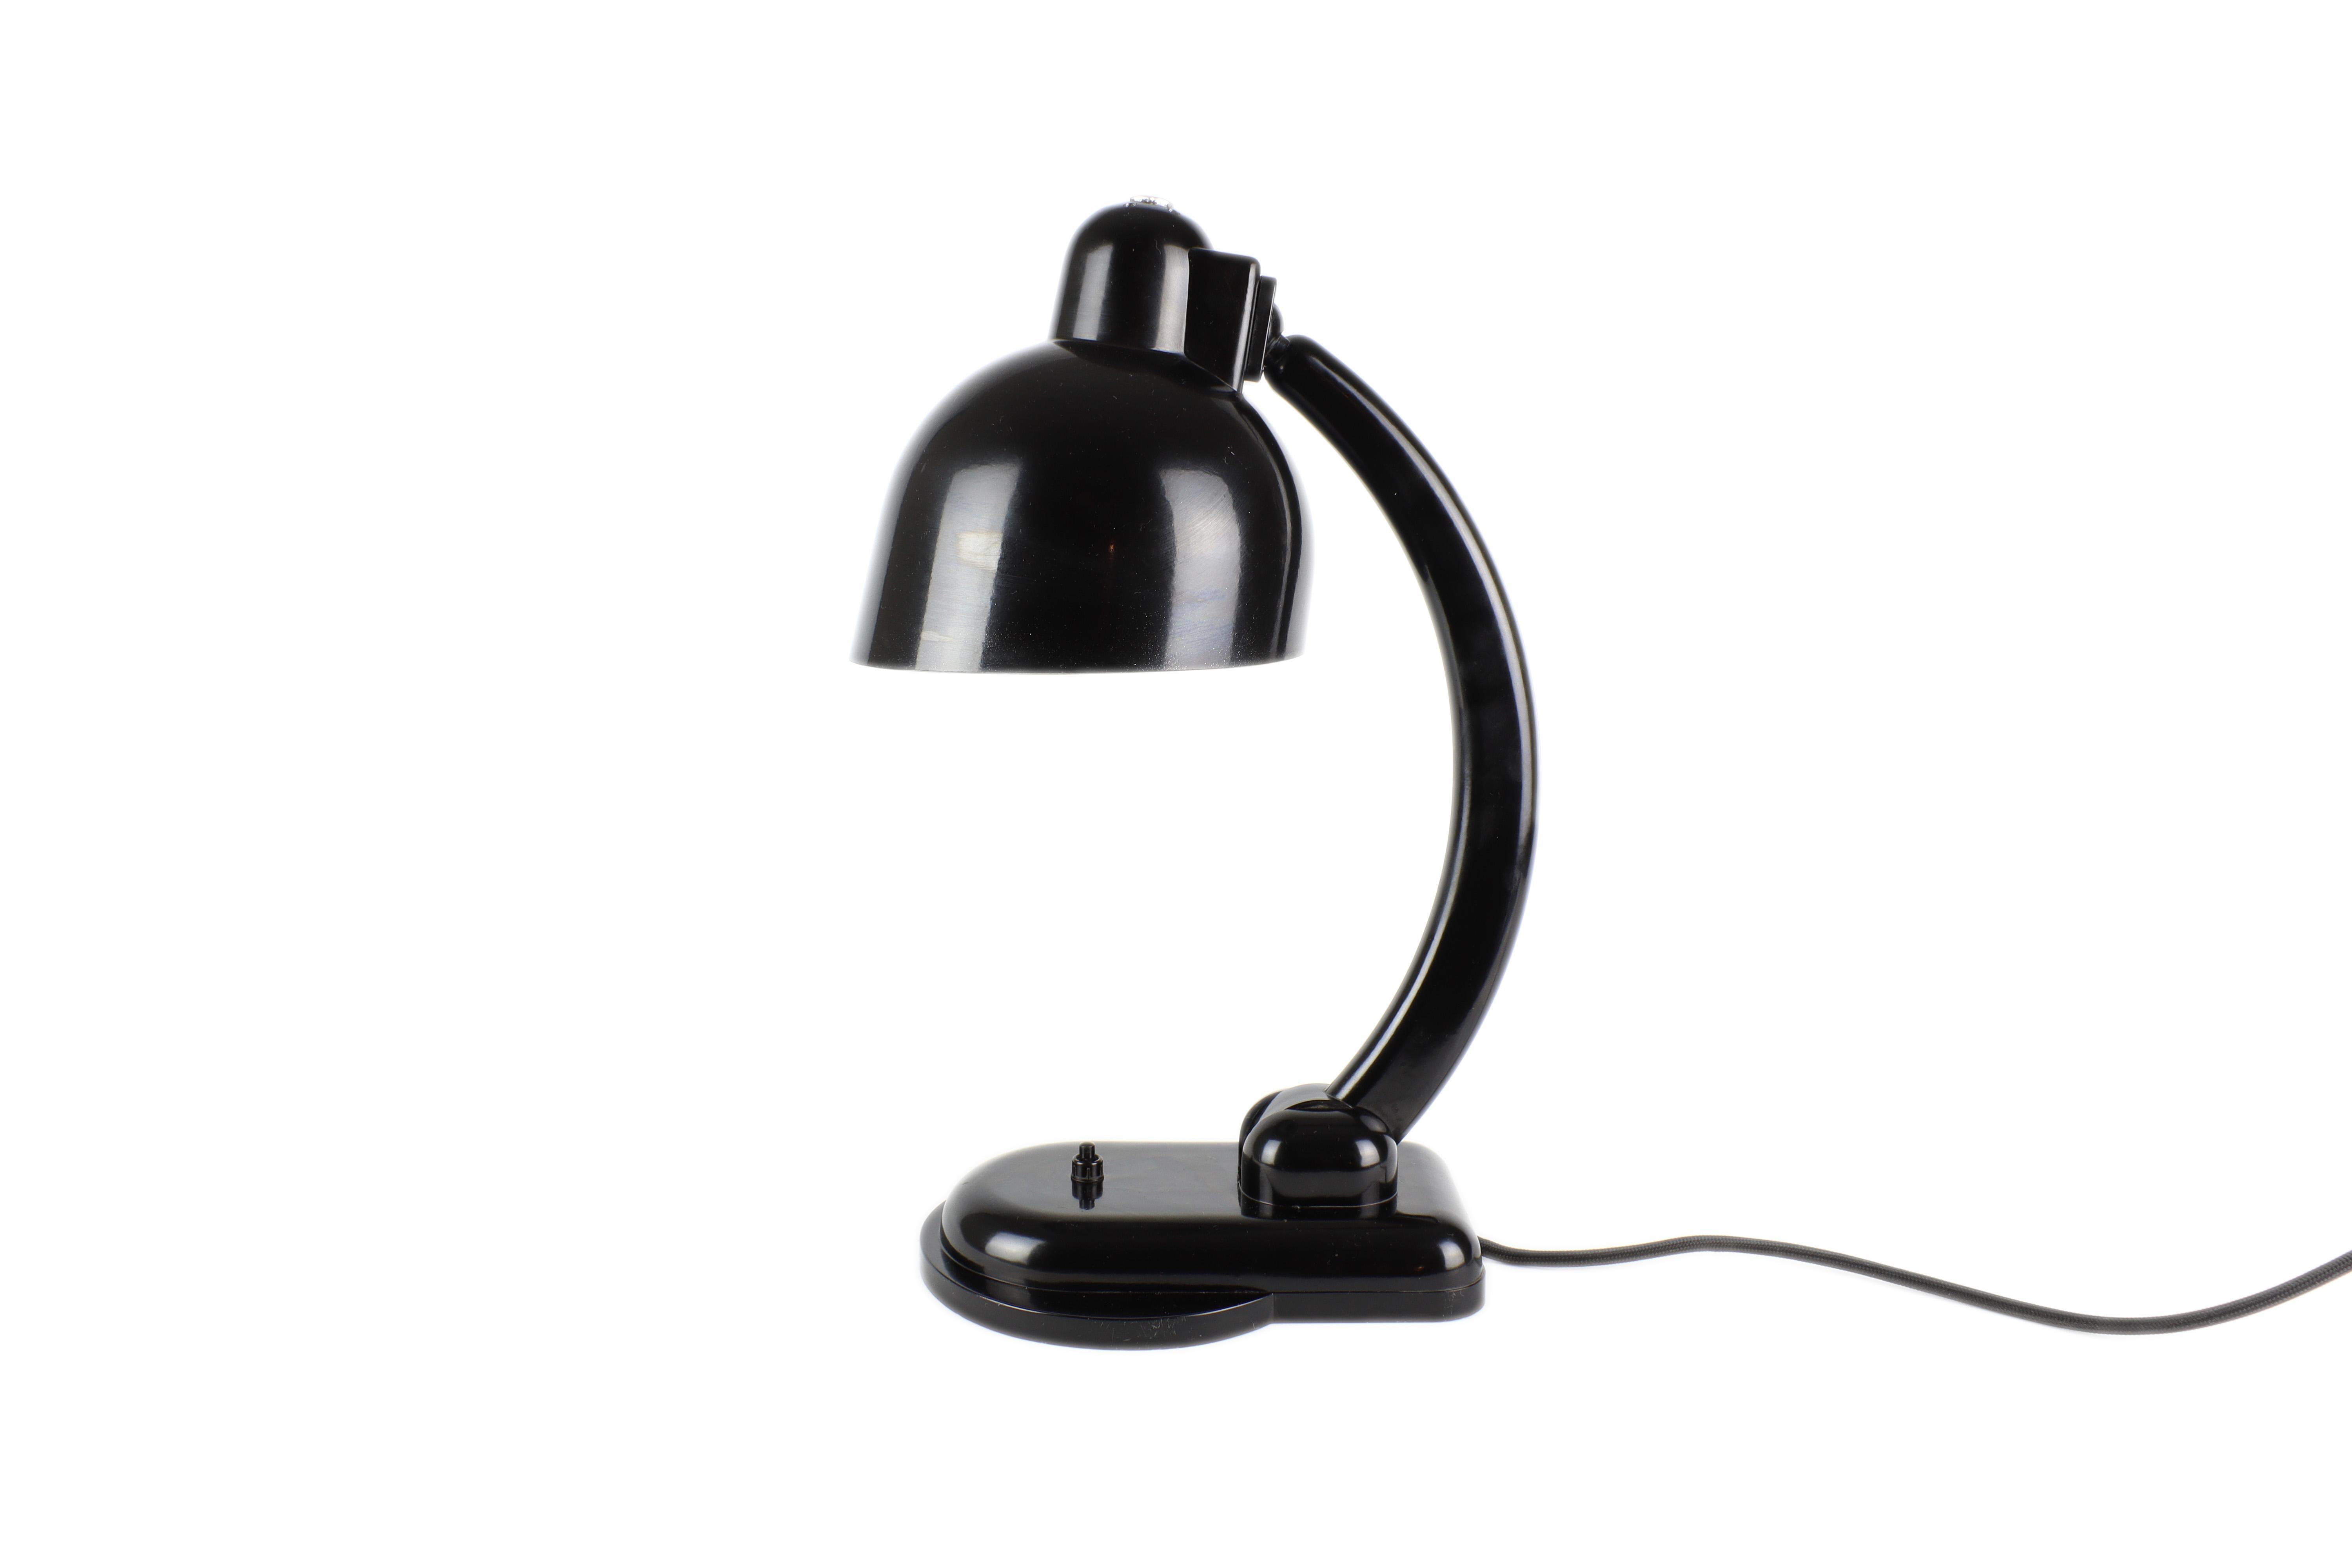 Cette lampe très rare a été conçue par le designer de renommée mondiale Christian Dell pour Heinrich Römmler AG en Allemagne. La lampe est dotée d'un mécanisme articulé qui vous permet de régler la direction et l'inclinaison de la lumière.